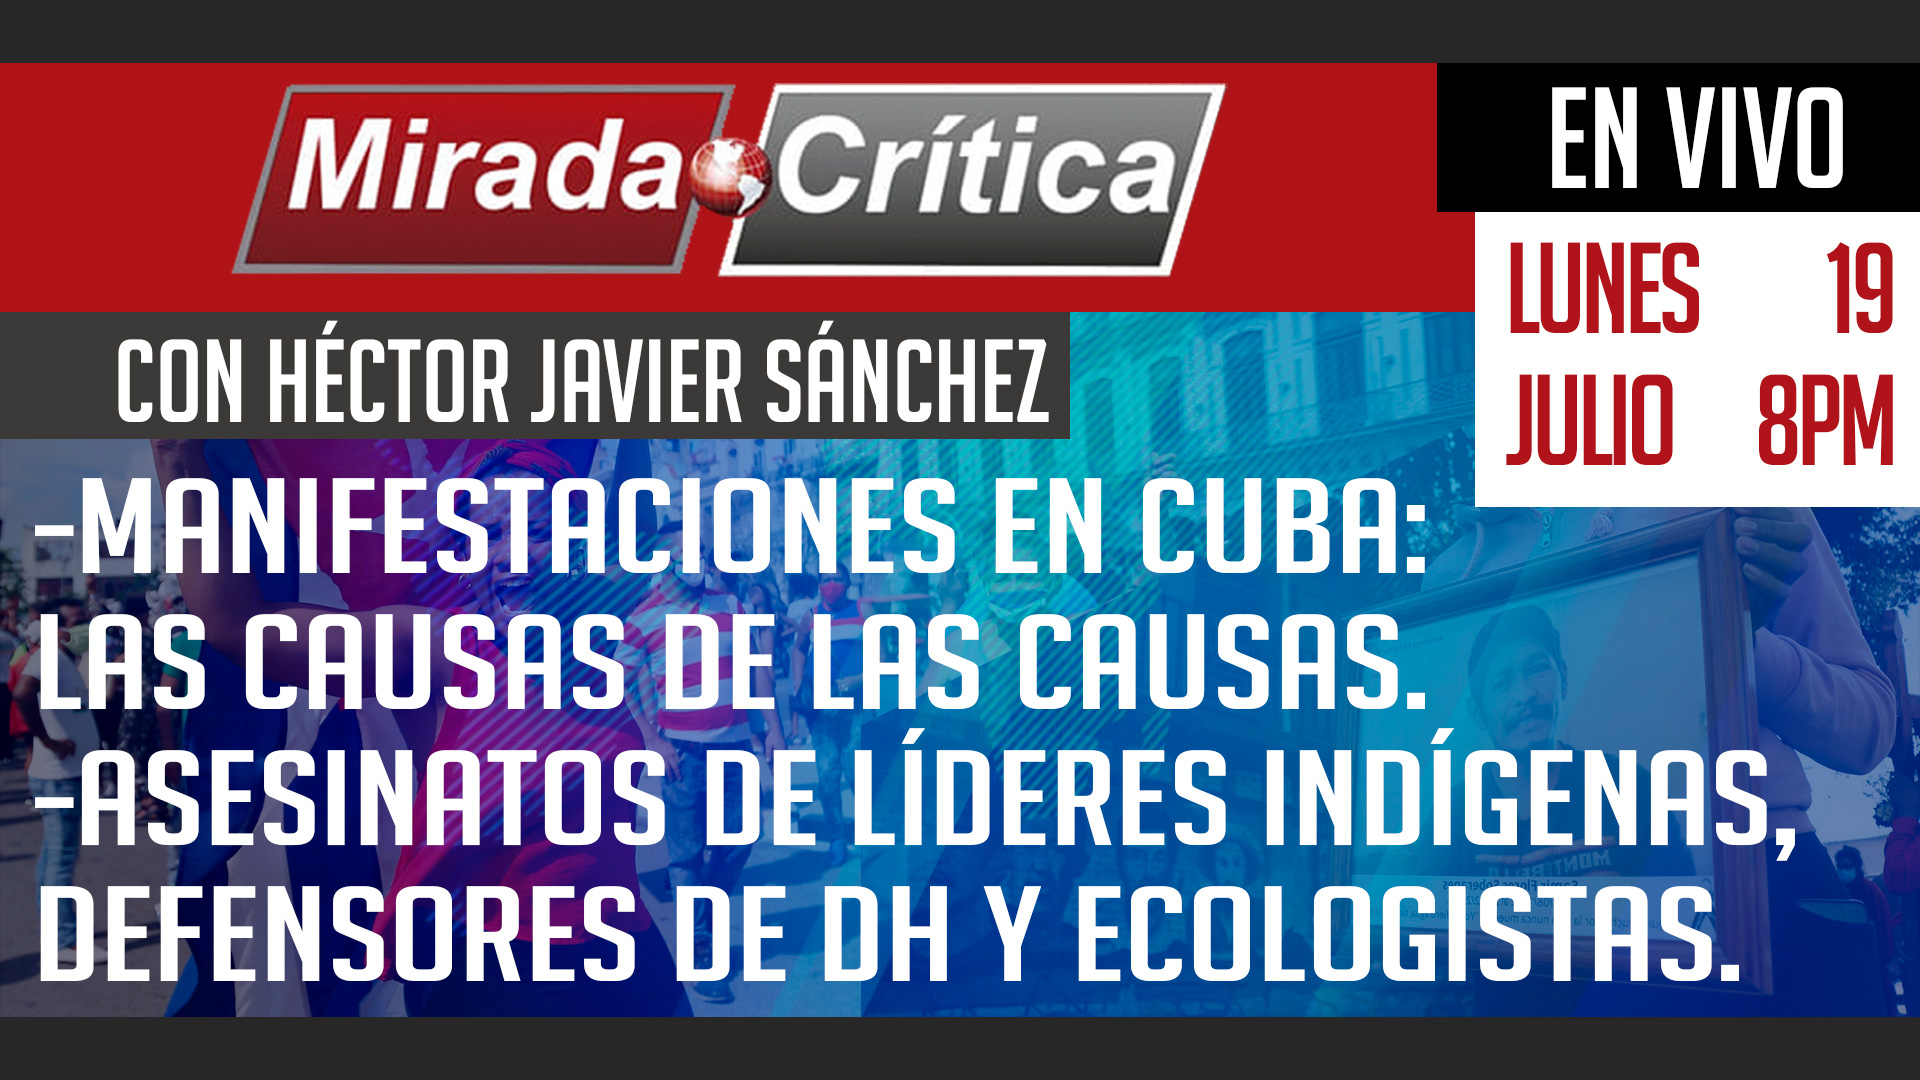 Manifestaciones en Cuba las causas de las causas… / Asesinatos de líderes indígenas, defensores y ecologistas - Mirada Crítica